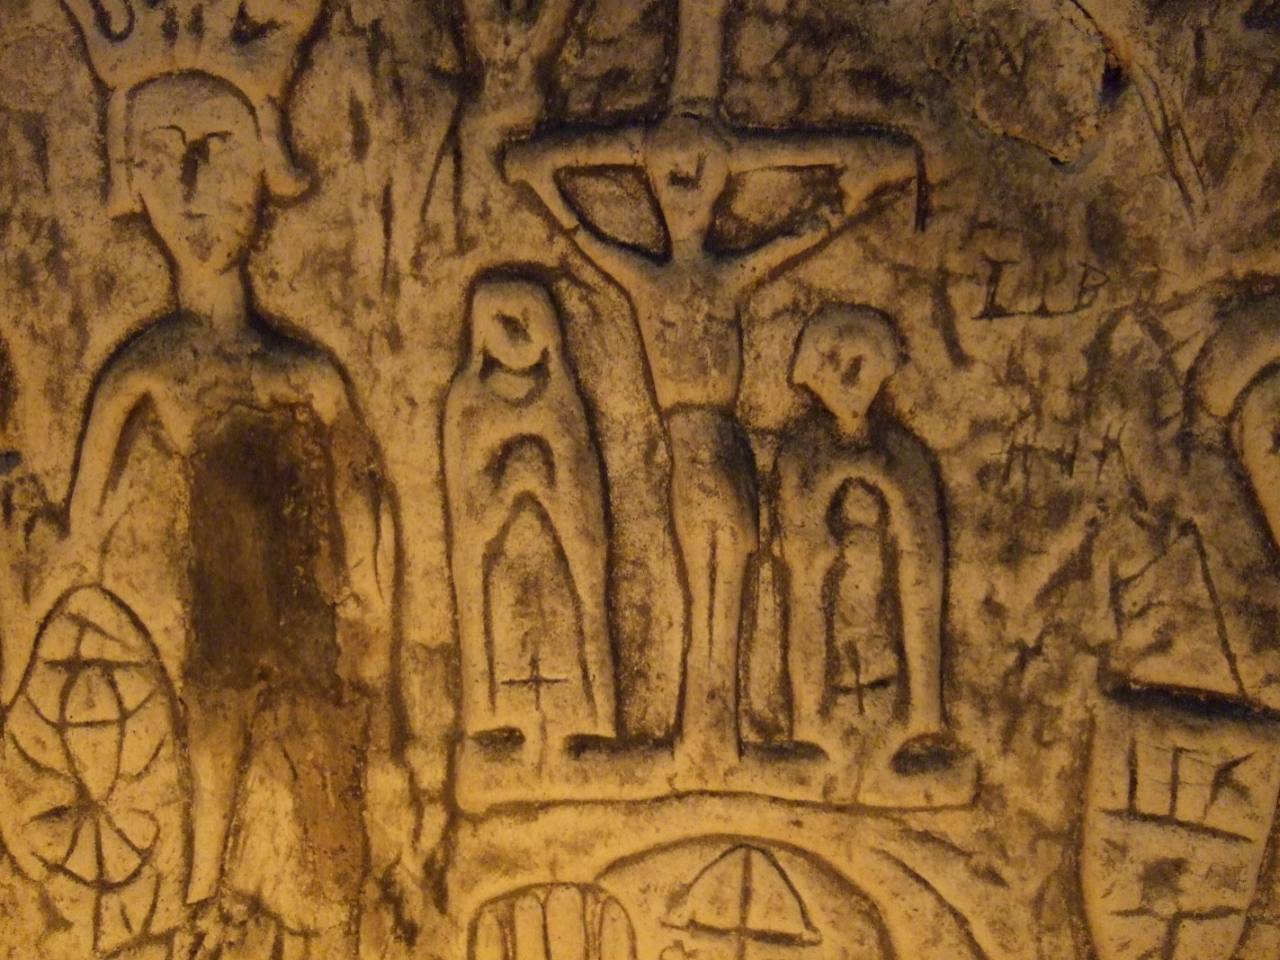 Symboles et gravures mystérieux dans la grotte artificielle de Royston 4